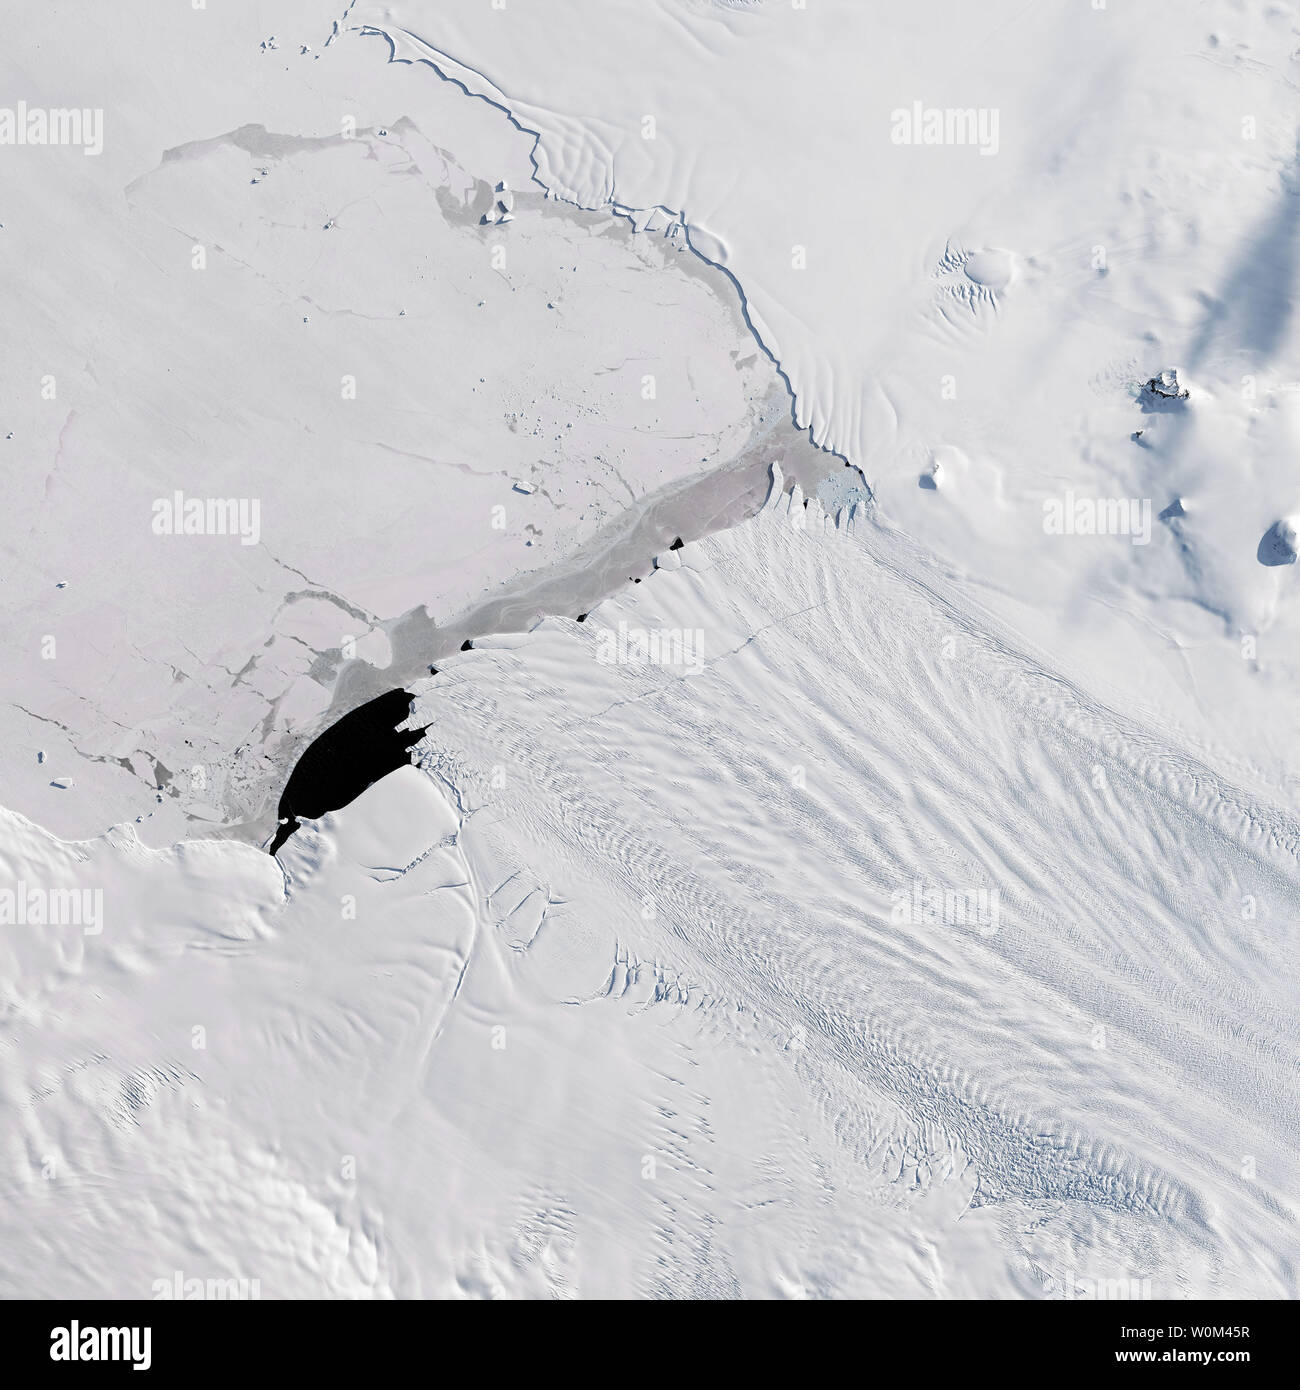 Un nuovo iceberg partorito da Pine Island Glacier - uno dei principali punti di vendita dove il ghiaccio dalla parte interna del West di ghiaccio in Antartide flussi foglio nell'oceano. La Terra operative imager (OLI) sul satellite Landsat 8 satellite catturato questo naturale-immagine a colori su Settembre 21, 2017, appena prima della pausa. Una frattura è visibile al centro del ghiacciaio flottante della mensola di ghiaccio. La pausa infine prodotto iceberg B-44, visibili nelle immagini radar acquisite 23 settembre con l'Agenzia Spaziale Europea Sentinel-1 satellite. Il nuovo Berg, a galla nel Amundsen Sea Embayment, ha un'area di circa 185 kilome quadrato Foto Stock